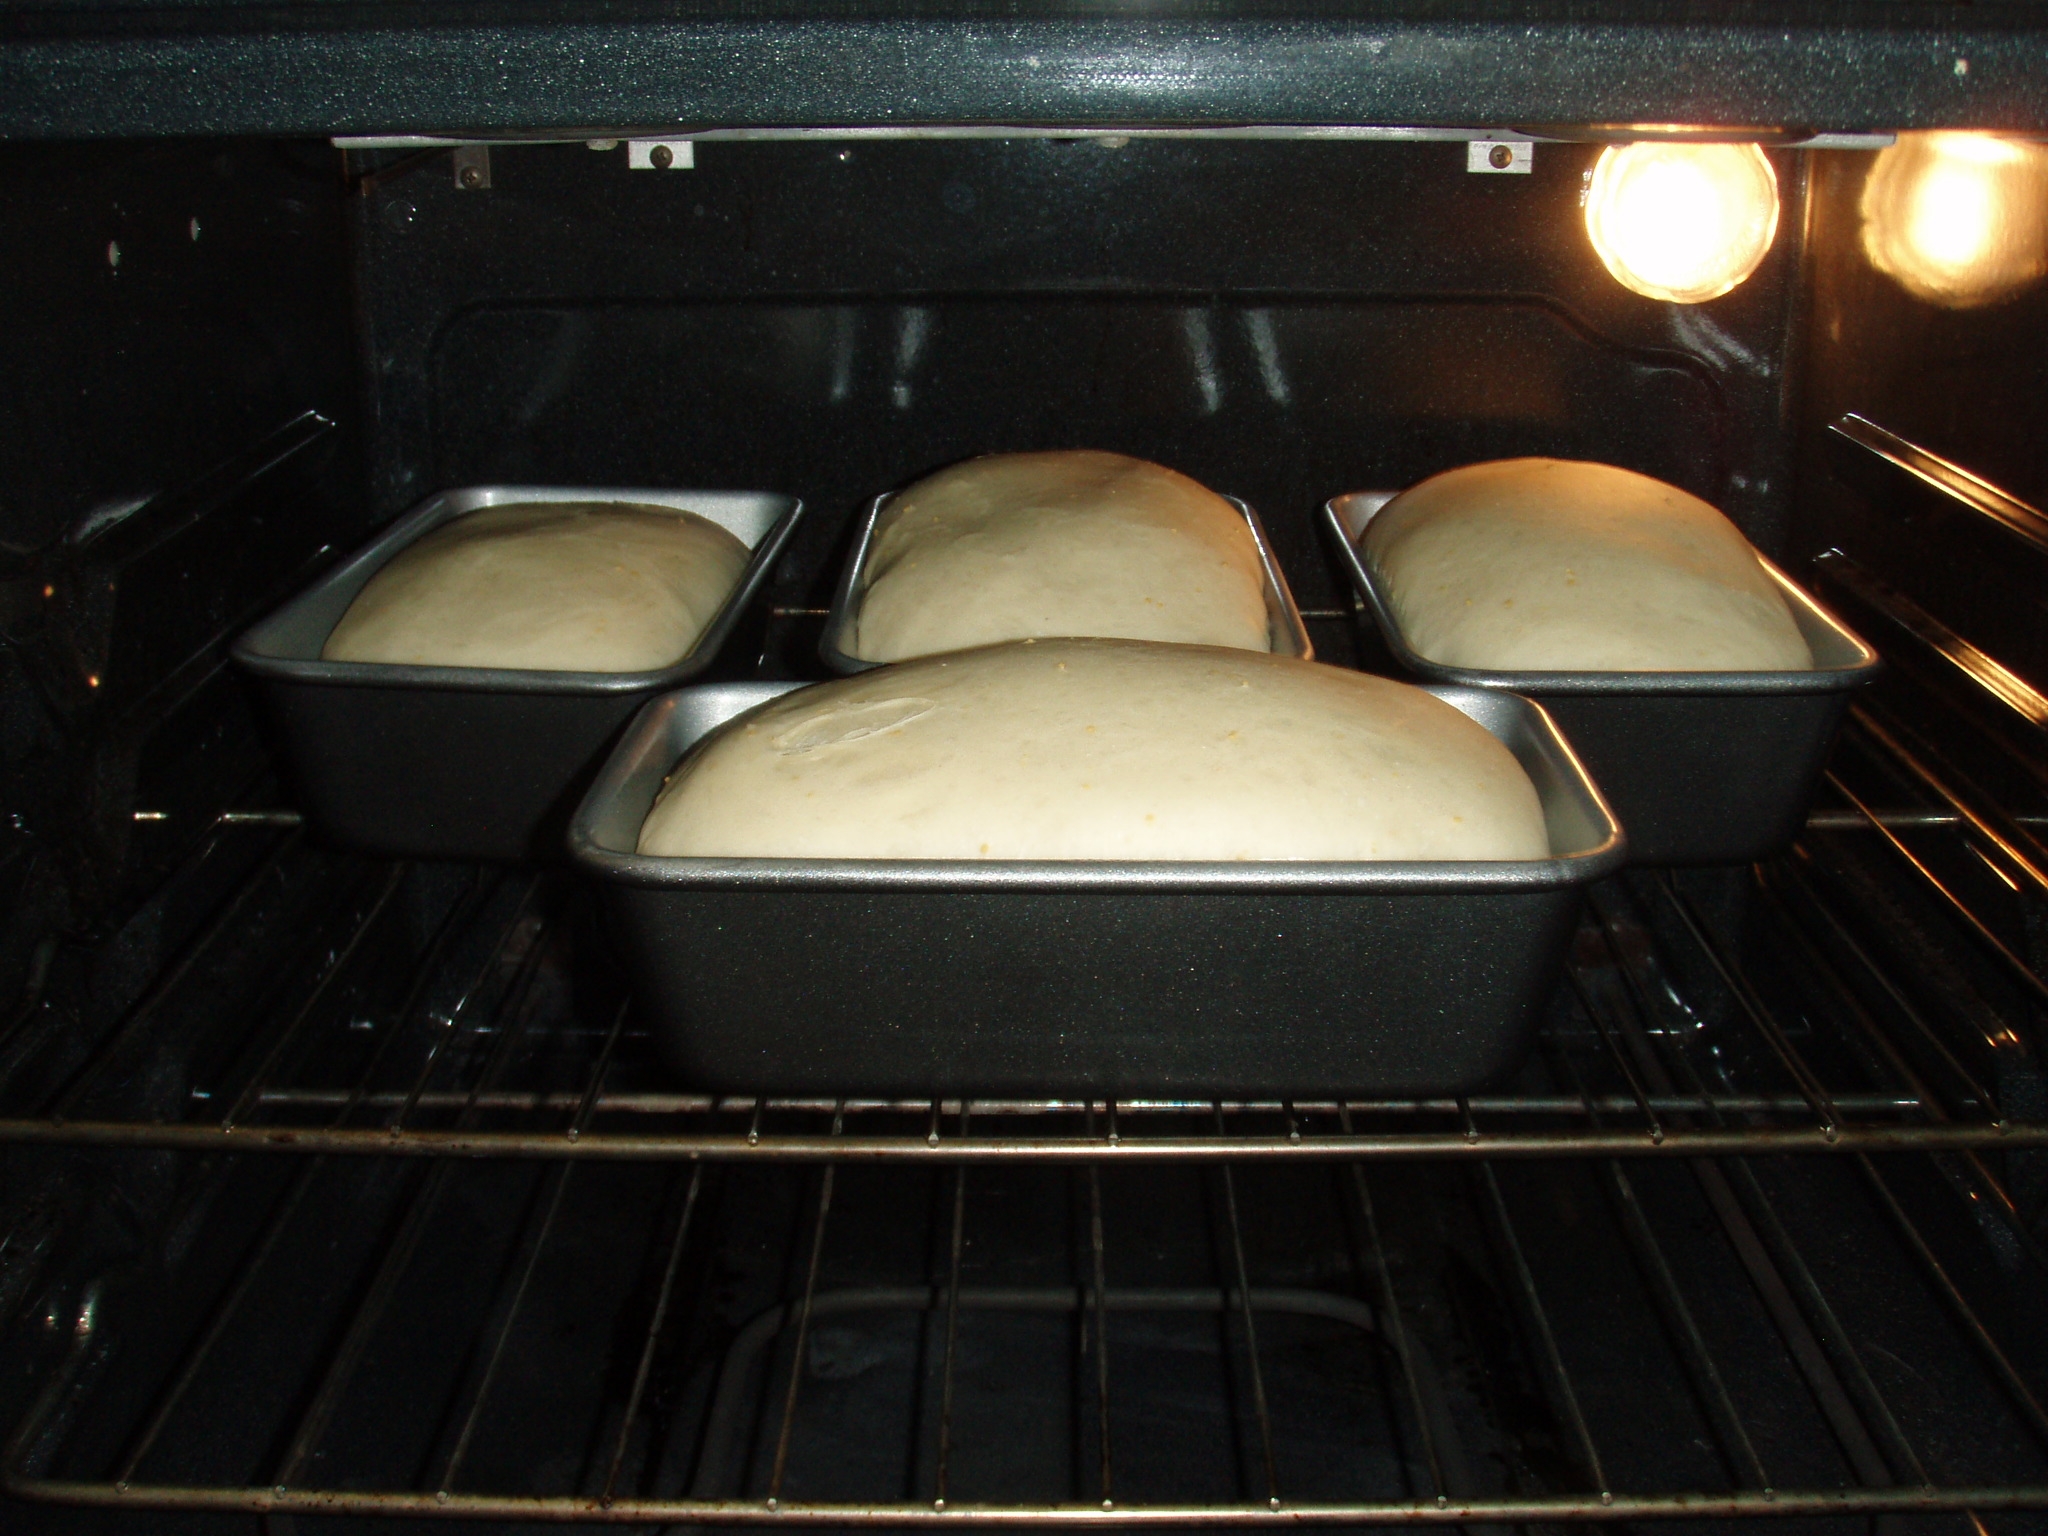 Тесто после духовки. Выпечка хлеба в духовке. Хлеб в форме в духовке. Дух хлеба. Хлеб в печи.